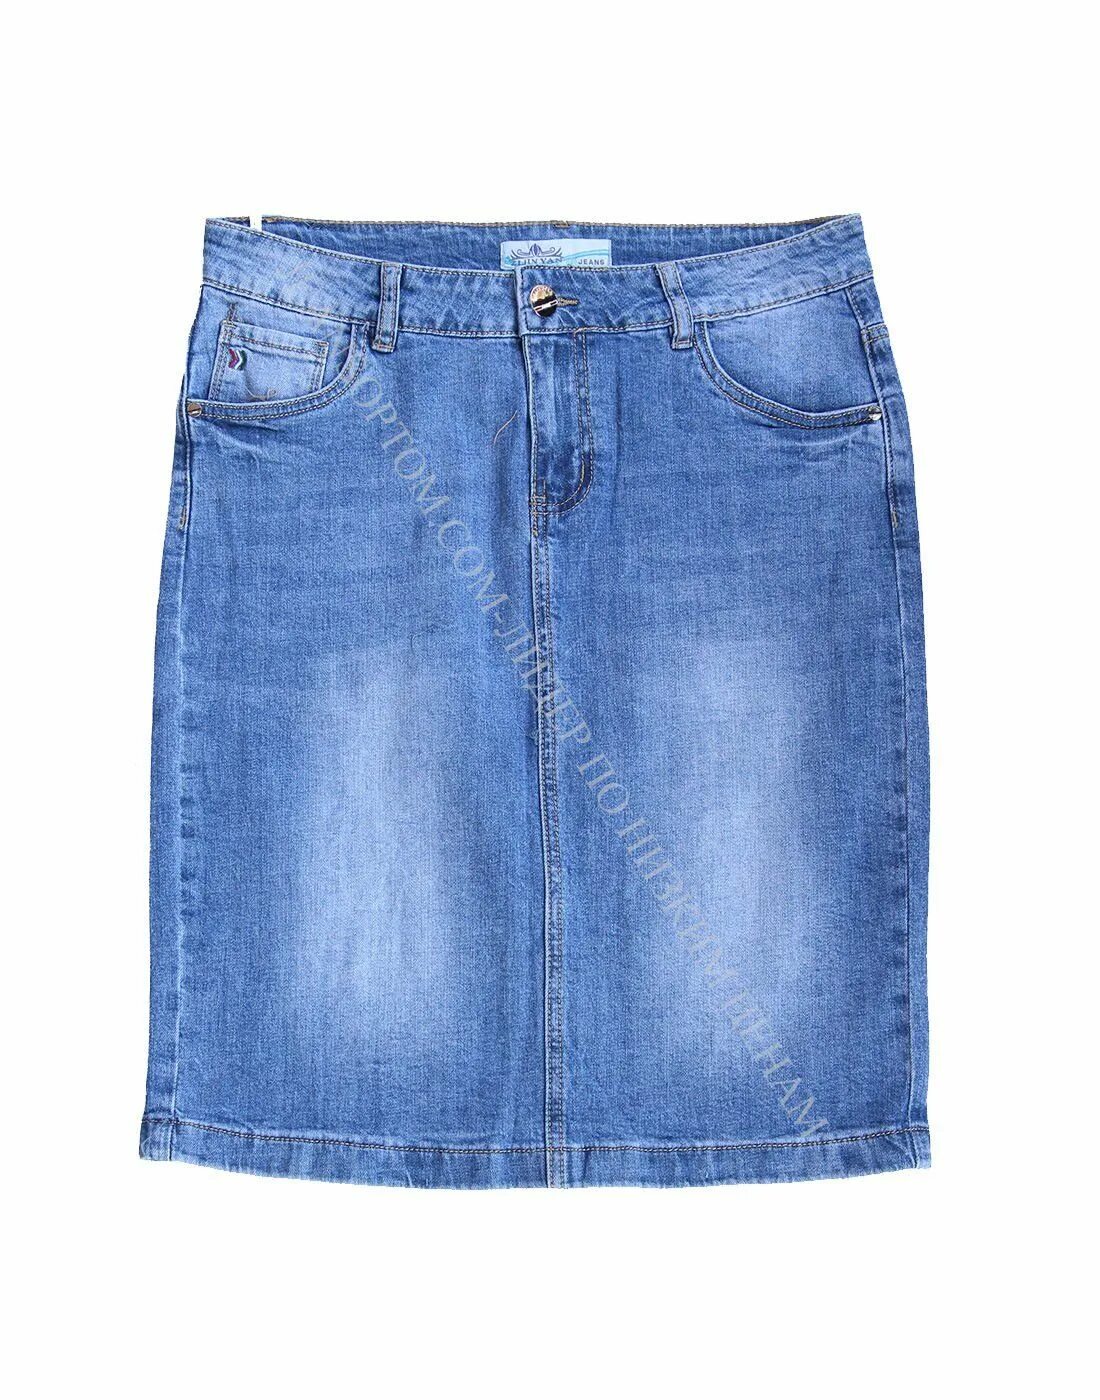 Джинсовая юбка синий. Zijinyan Jeans производитель. Esprit юбка джинсовая. Джинсовая юбка на пуговицах. Джинсовая юбка брендовая.